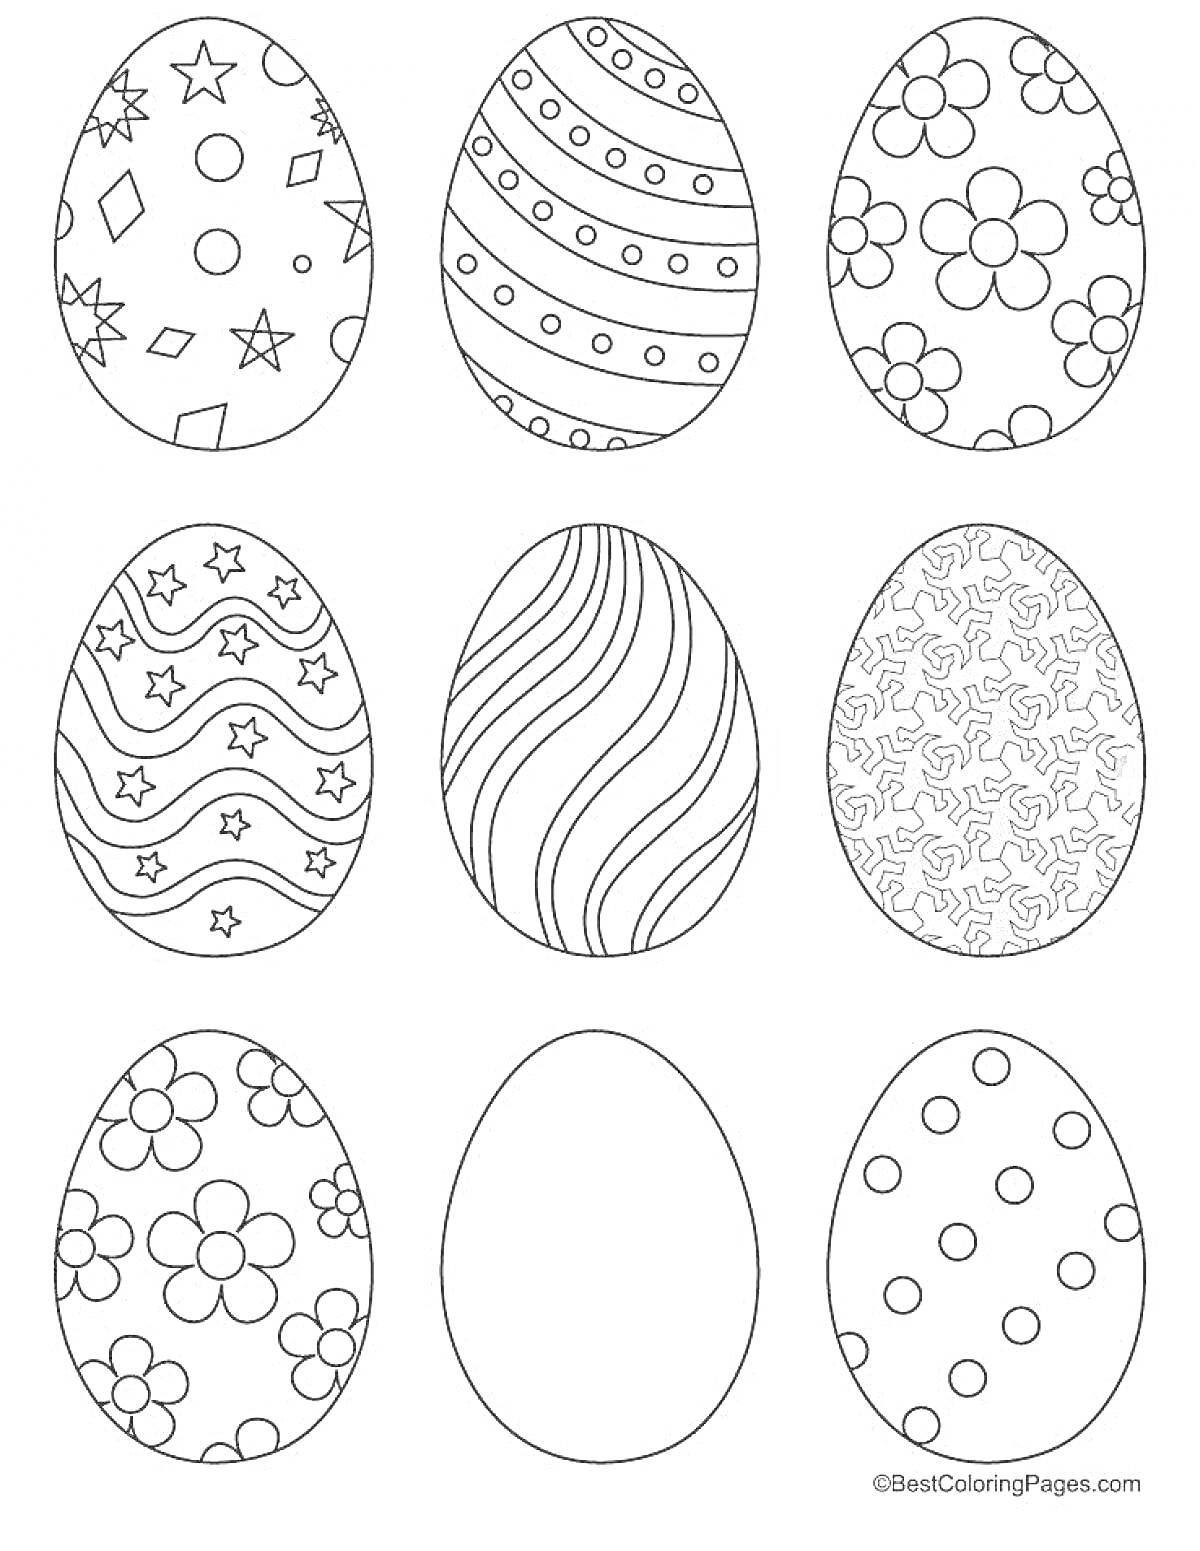 Раскраска Раскраска с яйцами, украшенными узорами (звезды и круги, диагональные линии, цветы, волны со звездами, волнистые линии, абстрактные узоры, большие цветы, пустое яйцо, маленькие круги и точки)